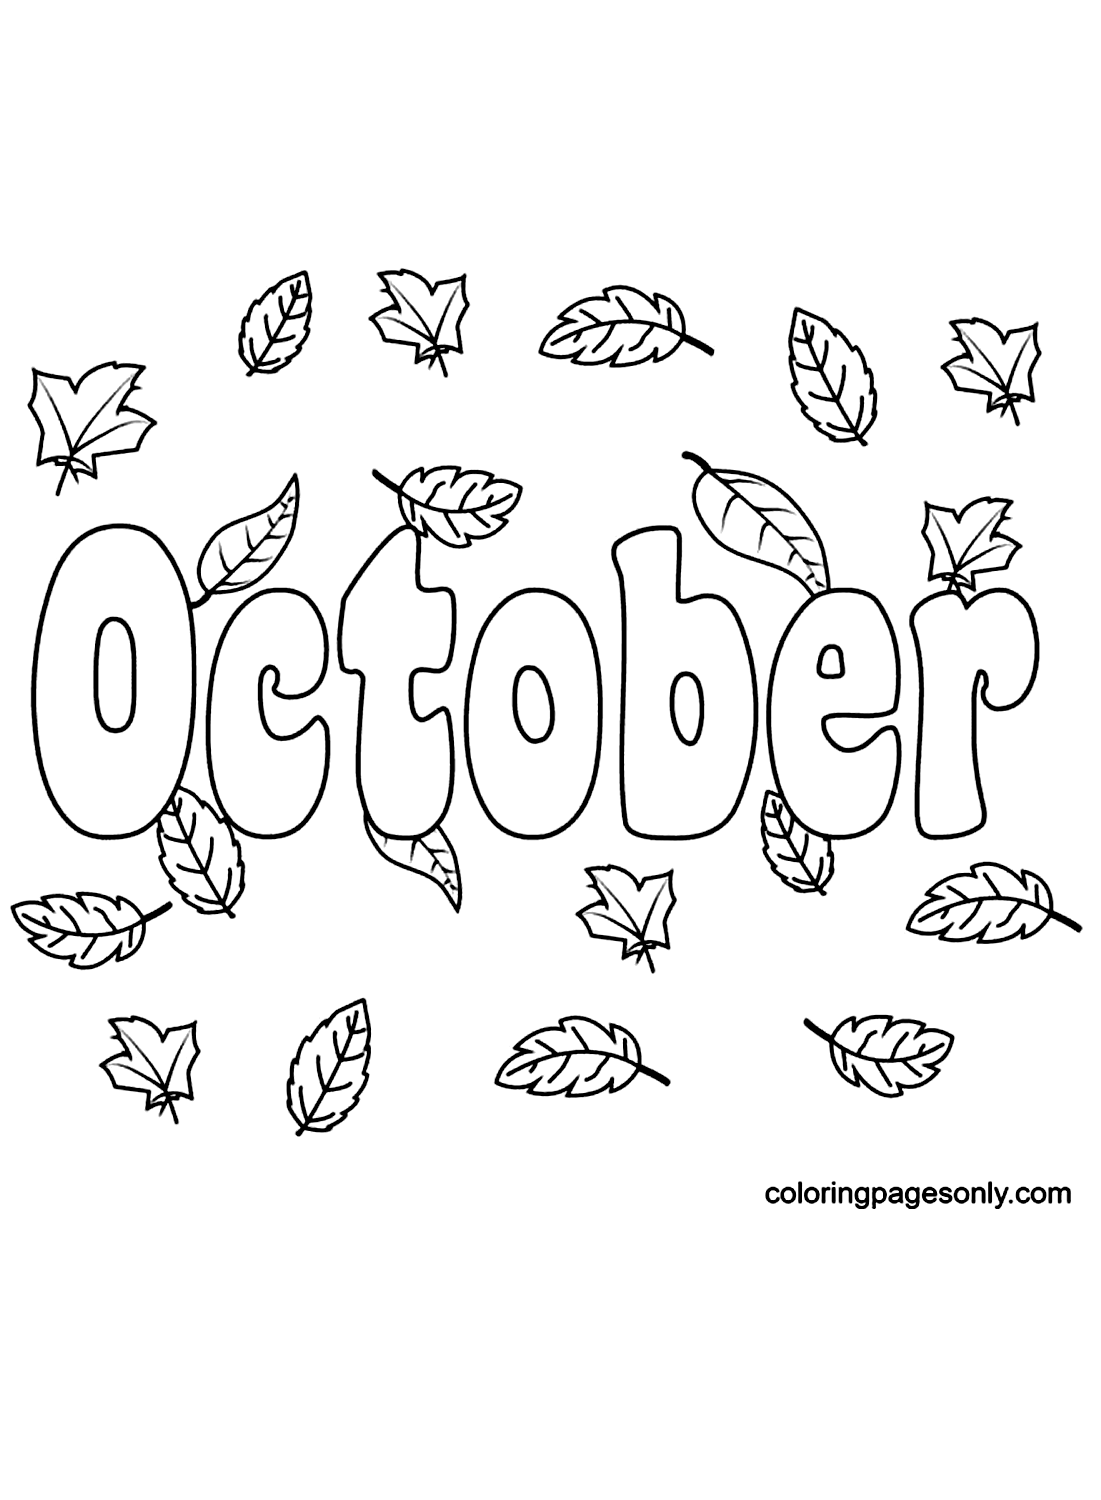 Oktober met herfstbladeren vanaf oktober